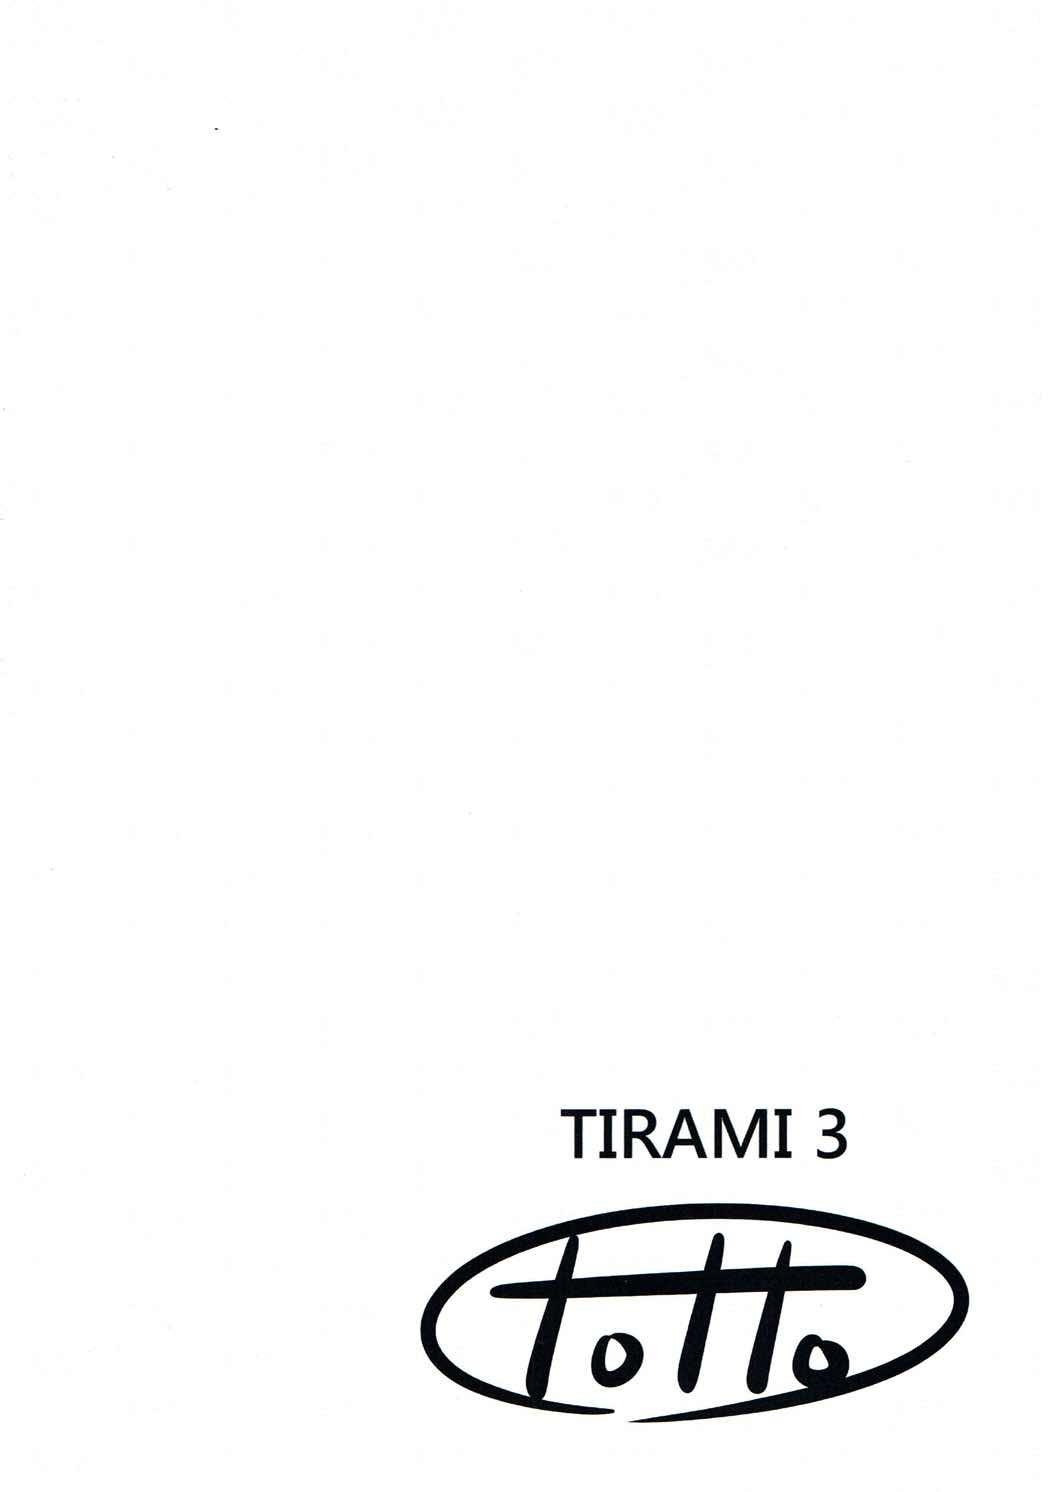 TIRAMI 3 10